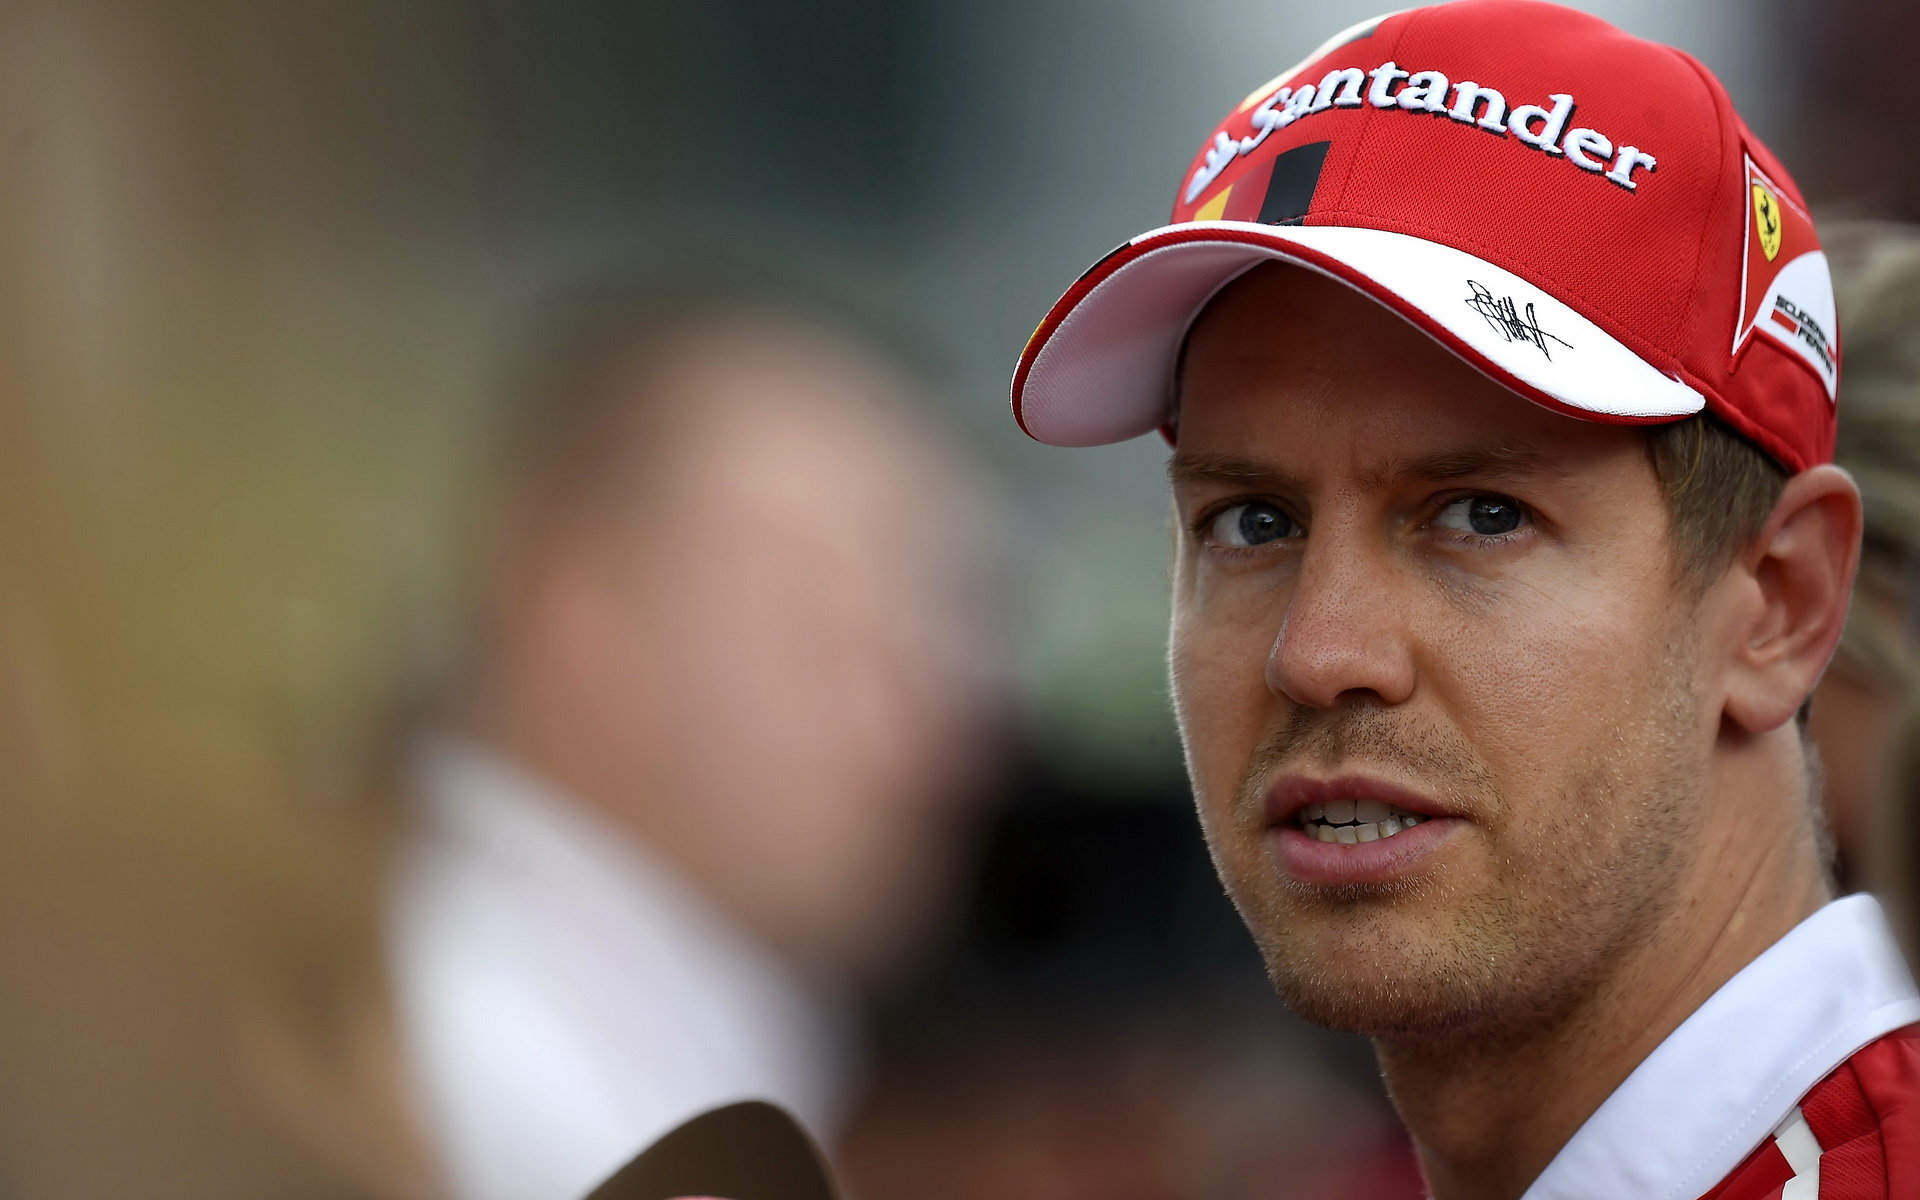 Sebastian Vettel už tuší, že pátý titul do své sbírky nepřidá